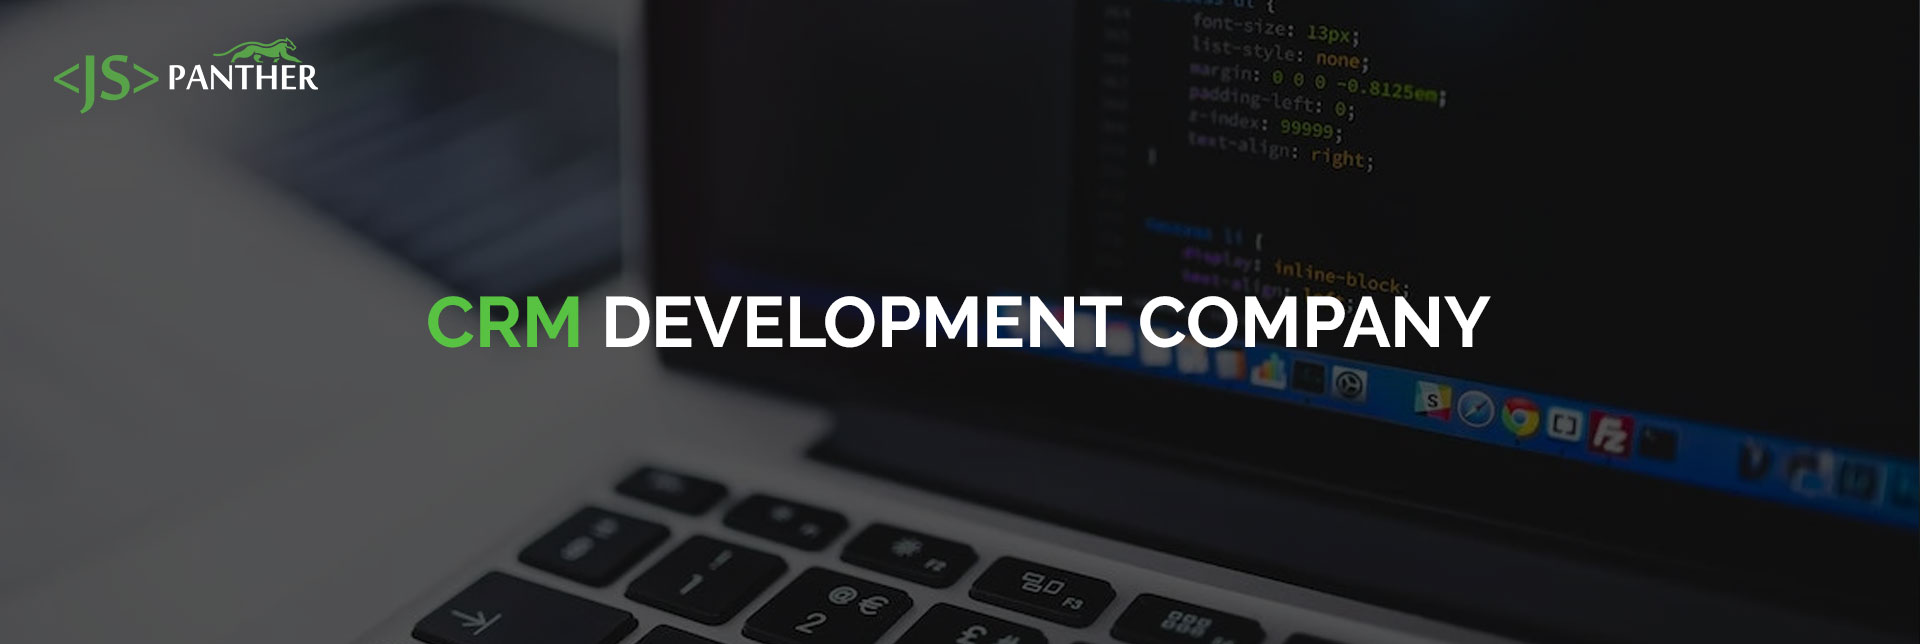 Custom CRM Software Development Company | CRM Software Developer USA